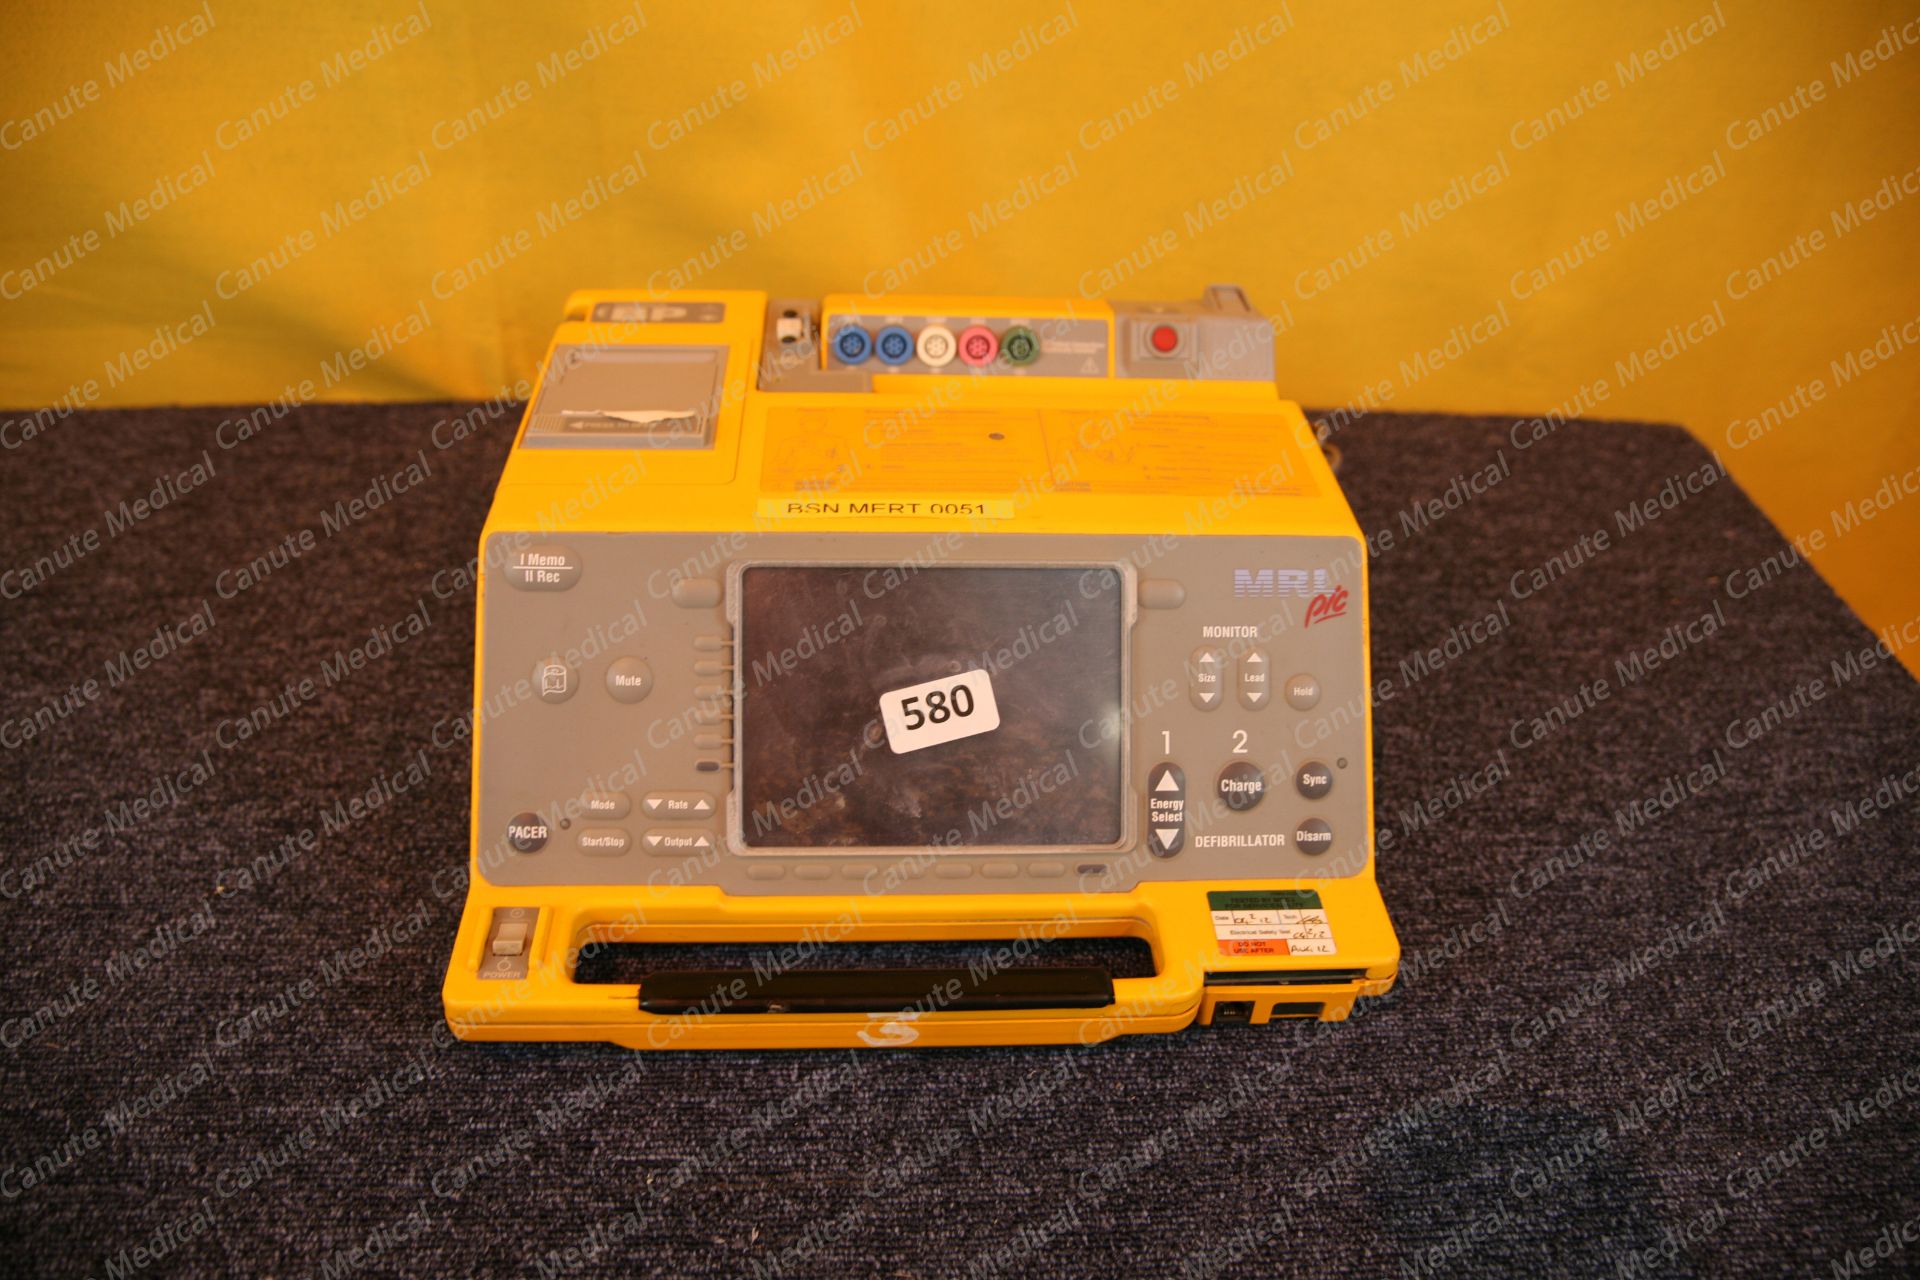 MRL PIC Defibrillator (9692)